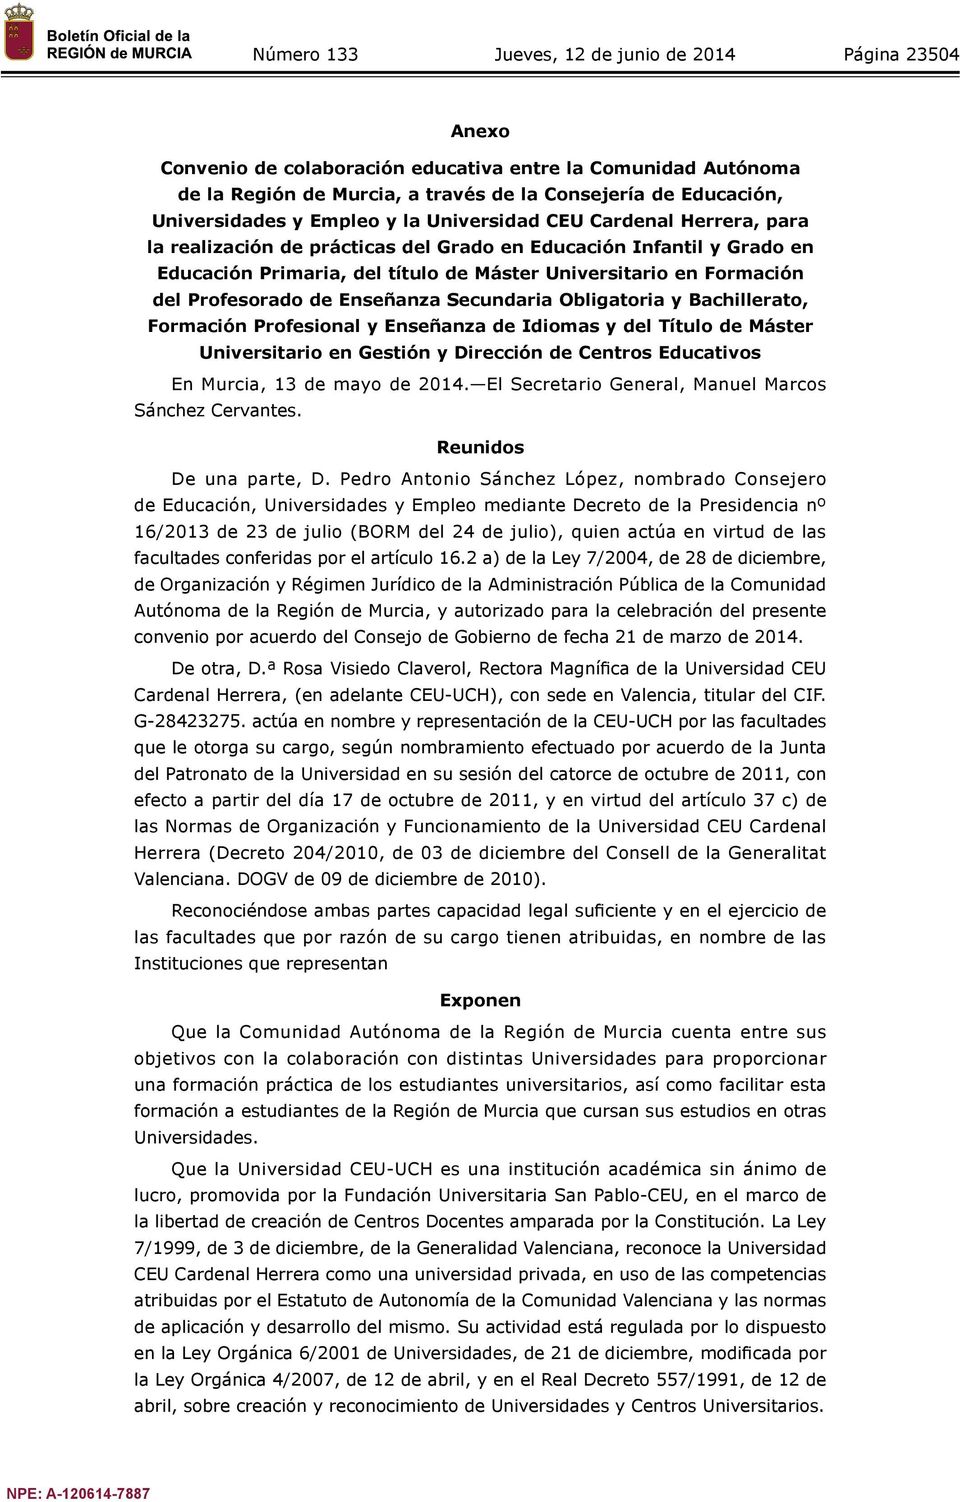 Obligatoria y Bachillerato, Formación Profesional y Enseñanza de Idiomas y del Título de Máster Universitario en Gestión y Dirección de Centros Educativos En Murcia, 13 de mayo de 2014.